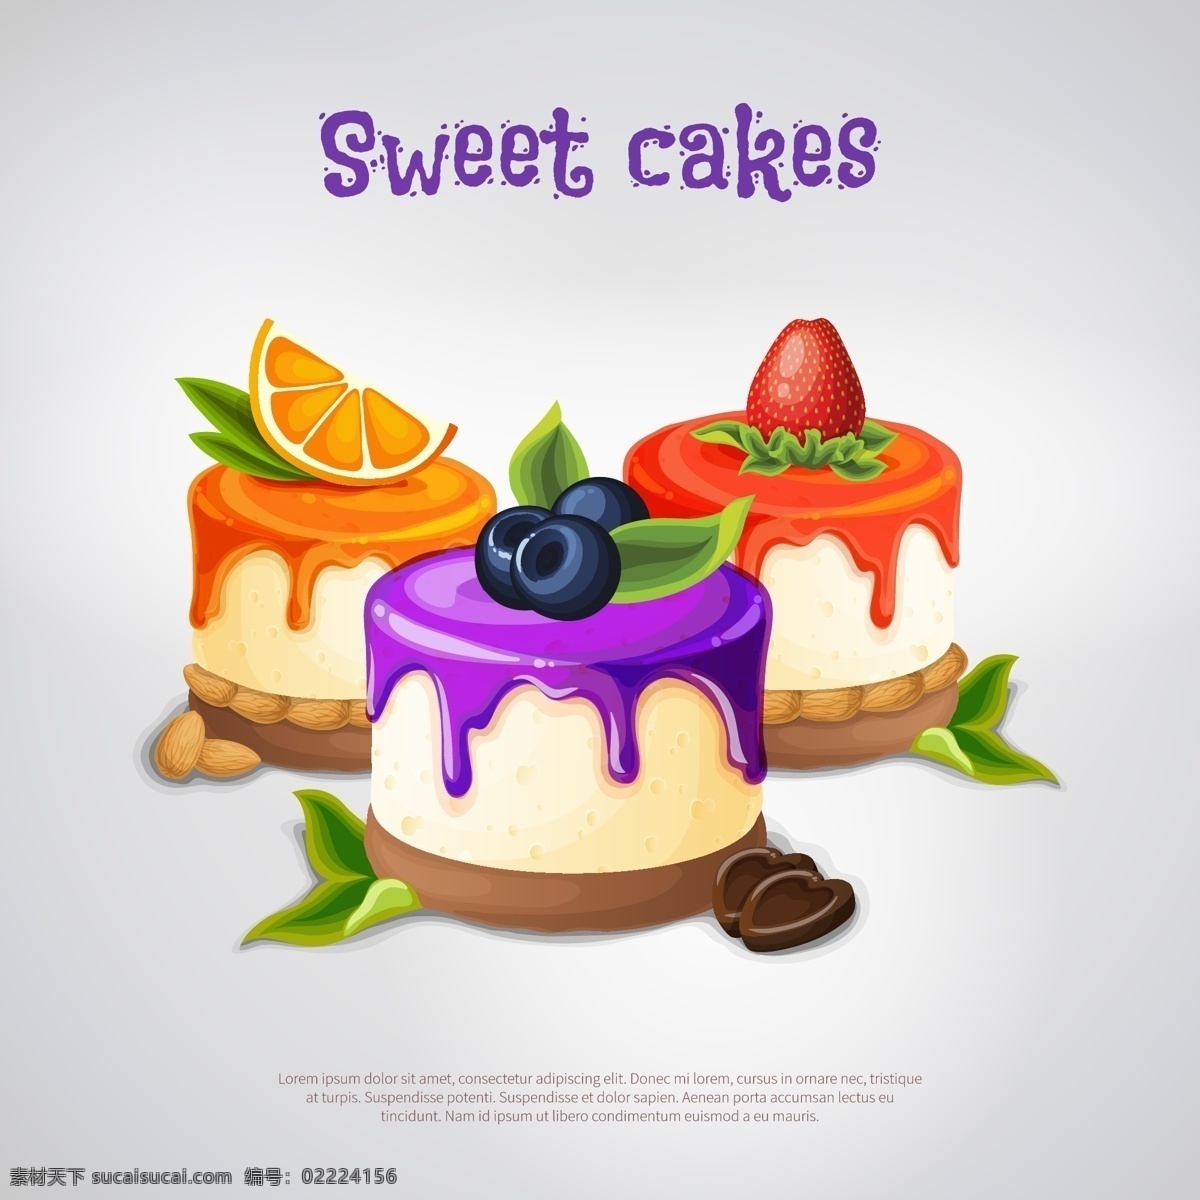 甜品蛋糕插画 甜品插画 甜点插画 蛋糕插画 甜品 甜点 蛋糕 插画 卡通 手绘 背景 展板 背景墙 场景